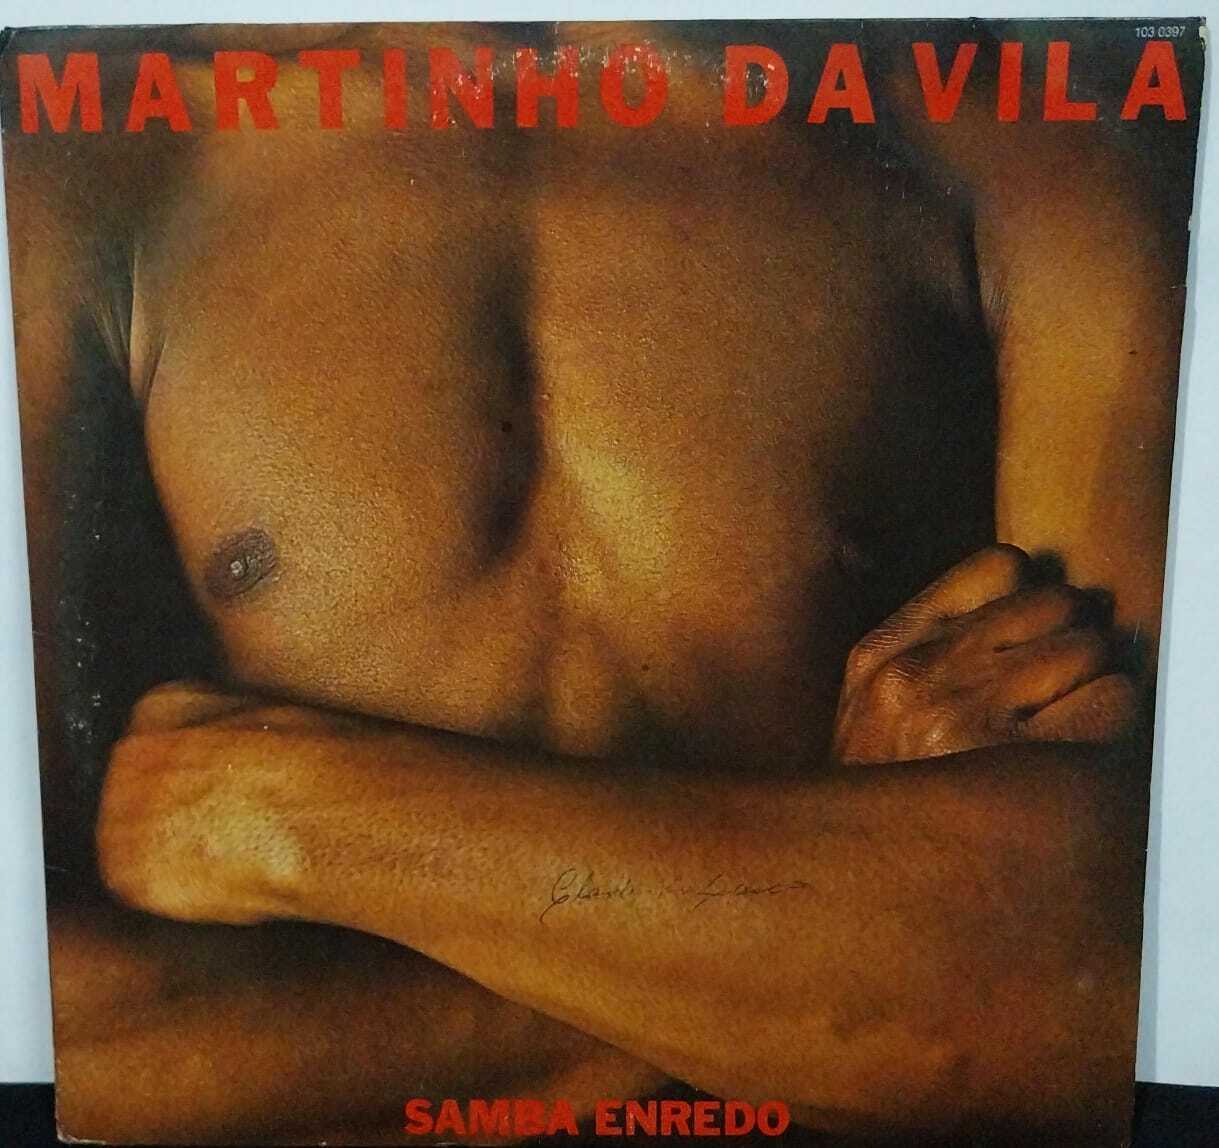 Vinil - Martinho da Vila - Samba Enredo